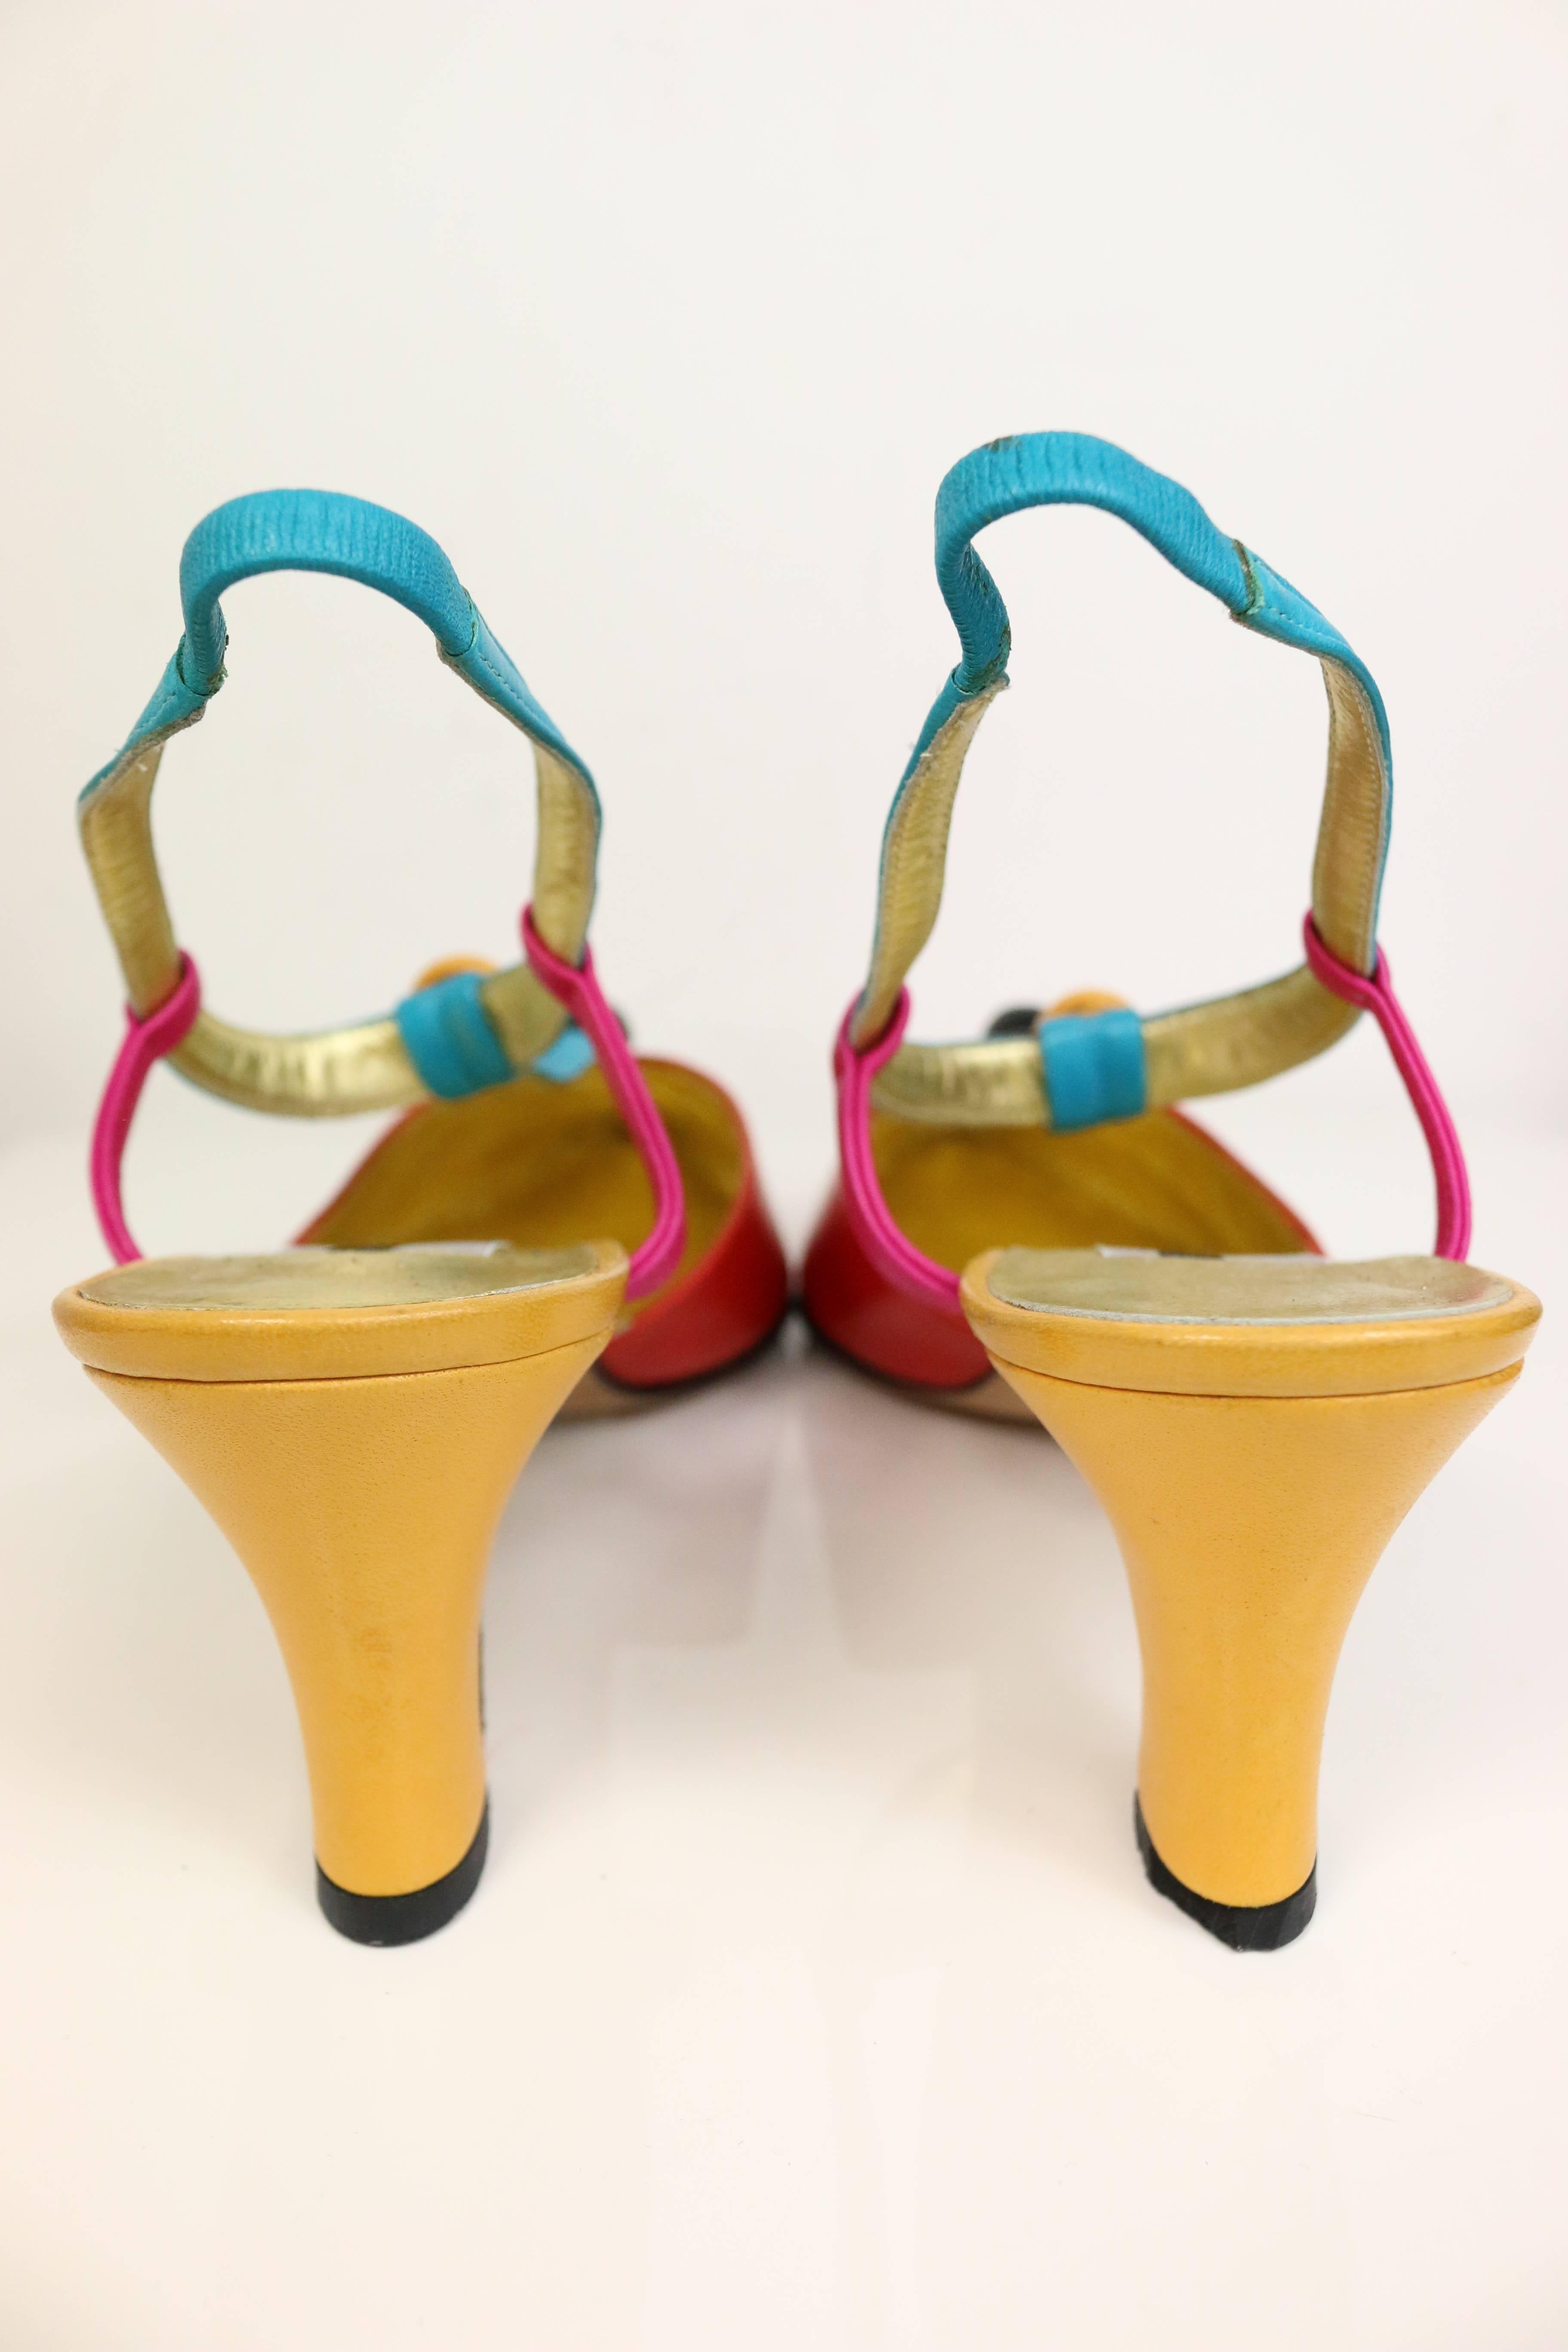 - Vintage 80s Pancaldi colour blocked (turquoise, rouge, rose, jaune, noir) slingback shoes en cuir. 

- Taille 37.5 

- Fabriqué en Italie. 

